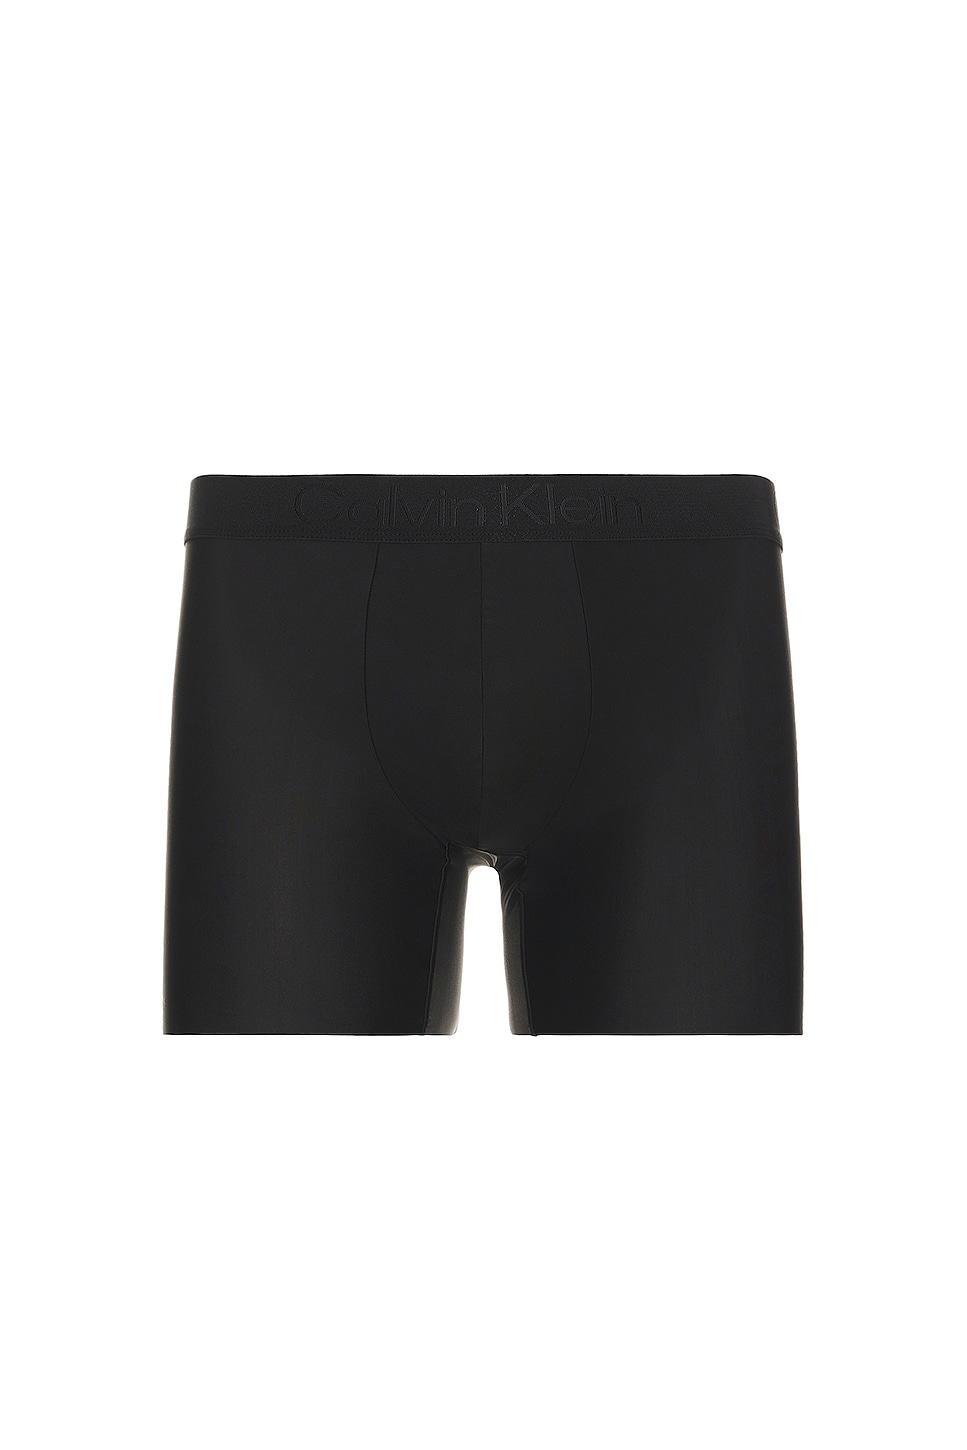 Calvin Klein Underwear Premium CK Brief | Micro Boxer in REVOLVE Black Black